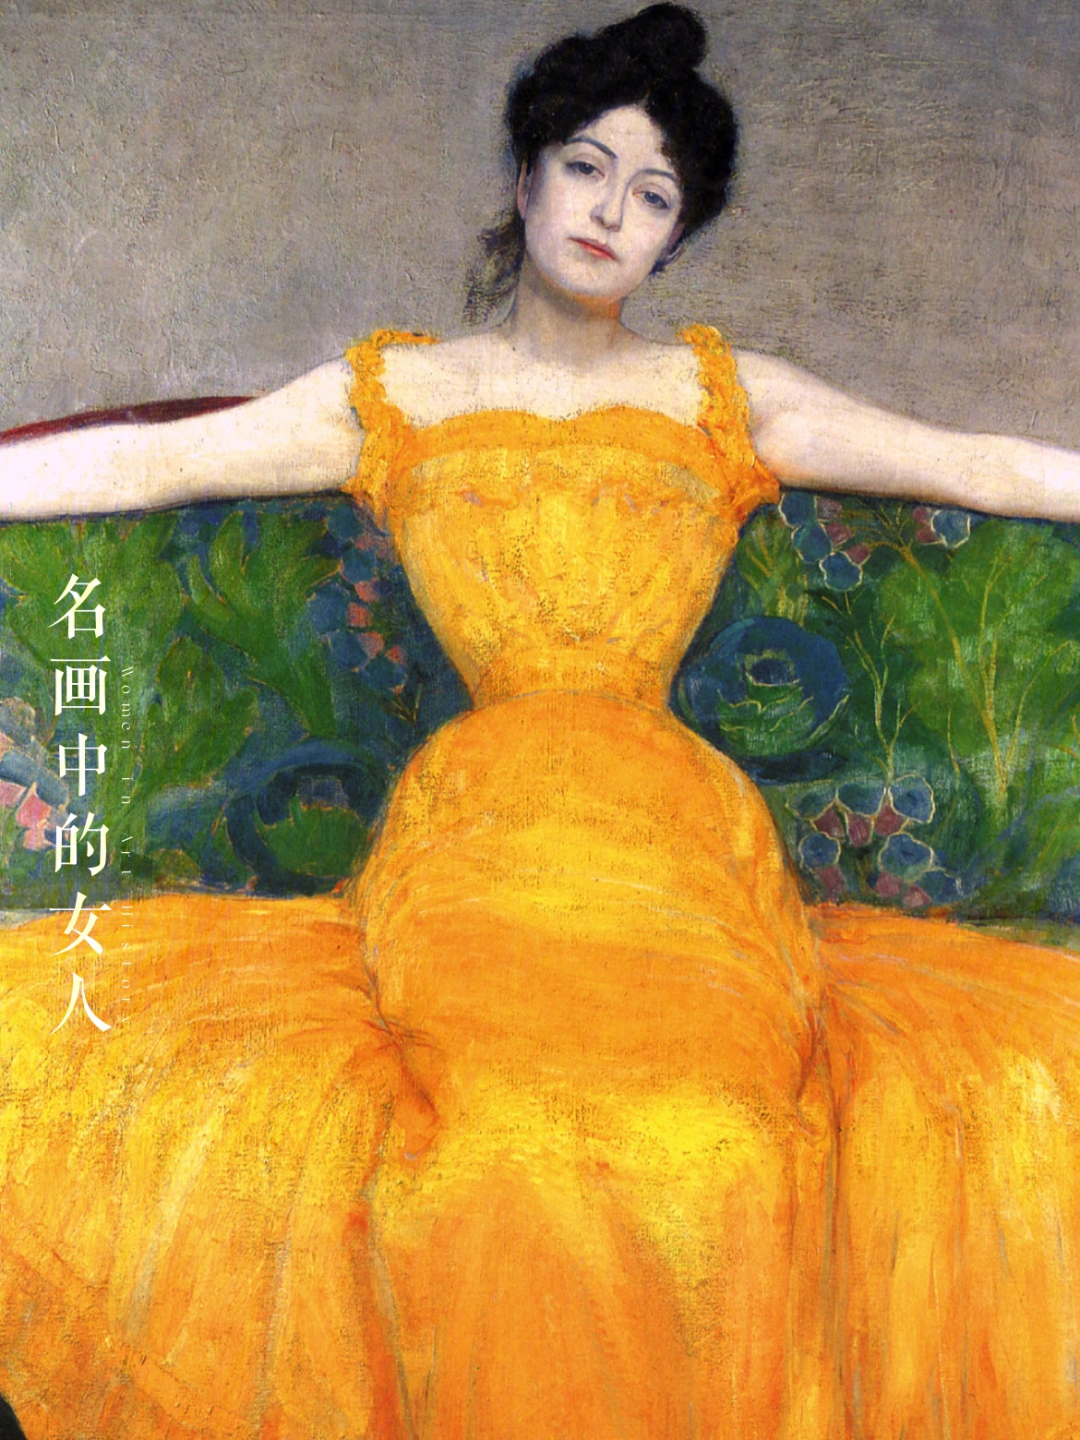 名画中的女人②画名:穿黄裙子的女人 lady in yellow dress艺术家